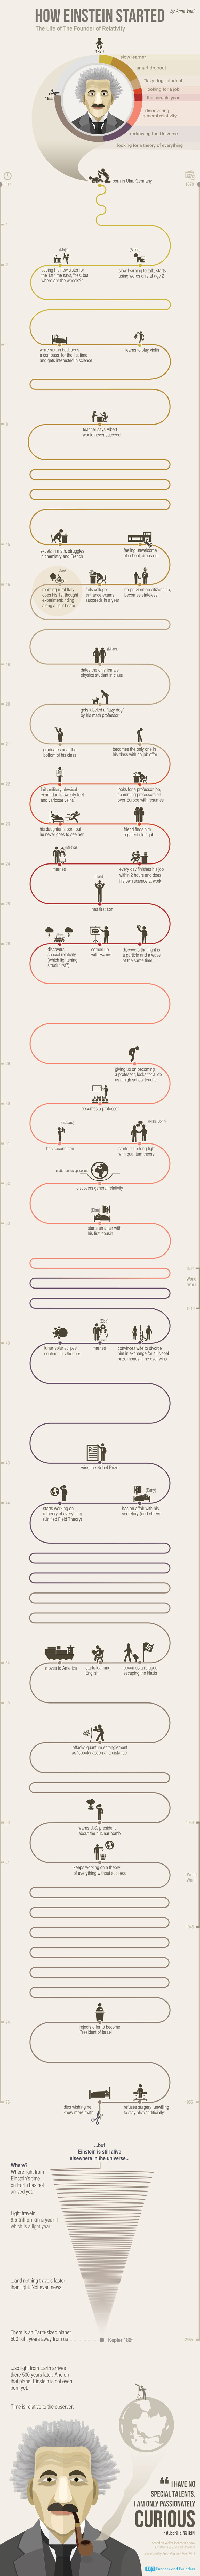 how einstein started infographic 2 How Einstein Went from Lazy Dog to Nobel Prize Winning Scientist